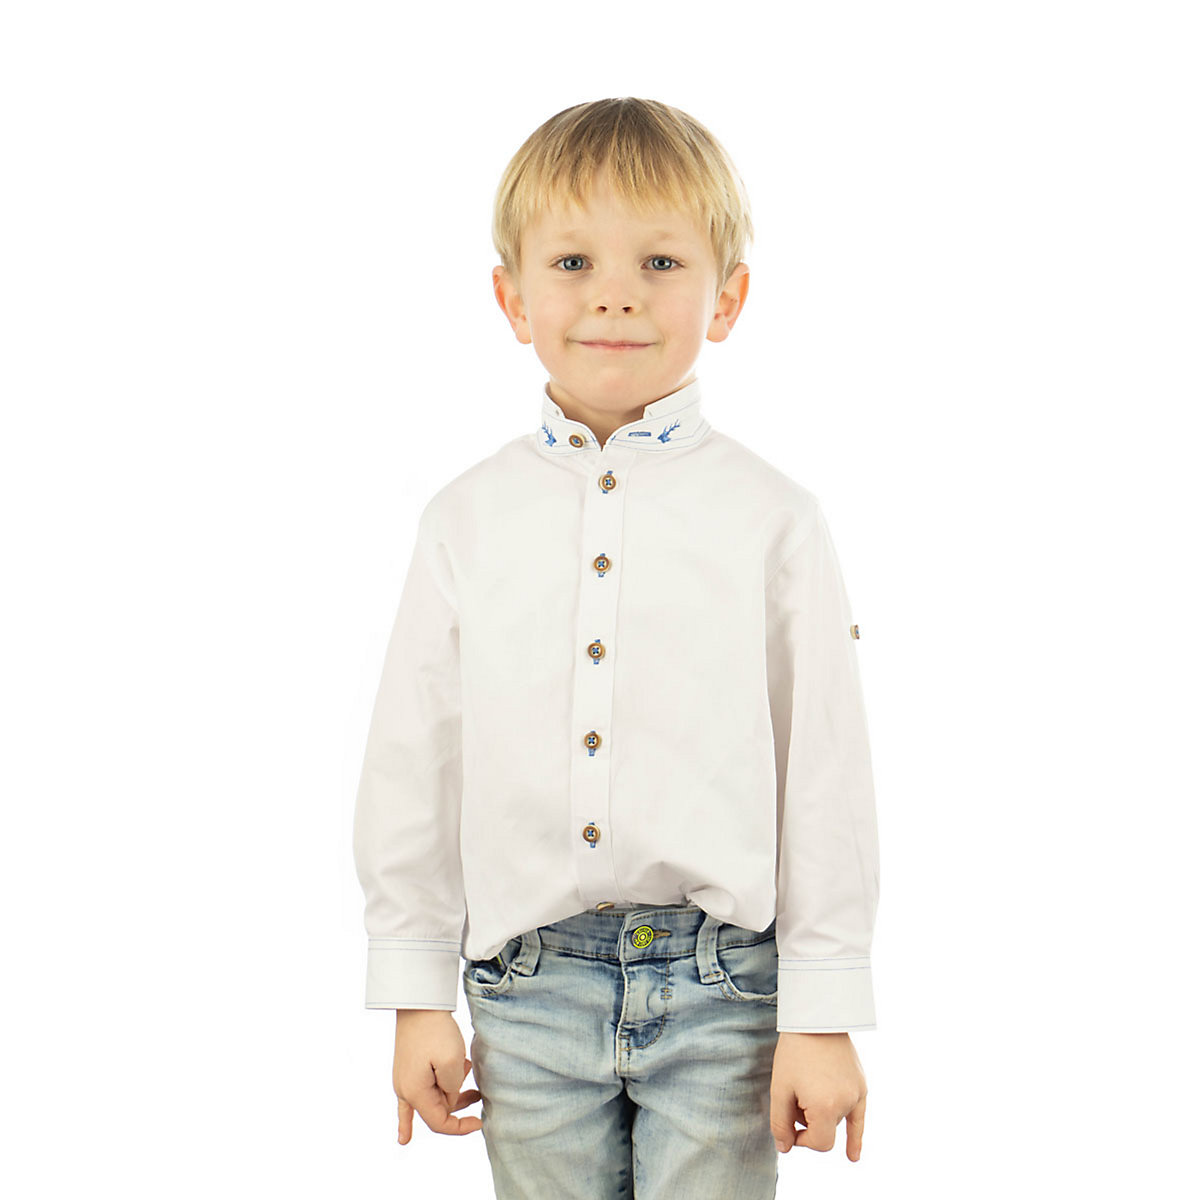 OS Trachten Kinder Jungen Langarm Trachtenhemd mit Hirsch-Stickereien auf dem Stehkragen Ojune für Jungen weiß